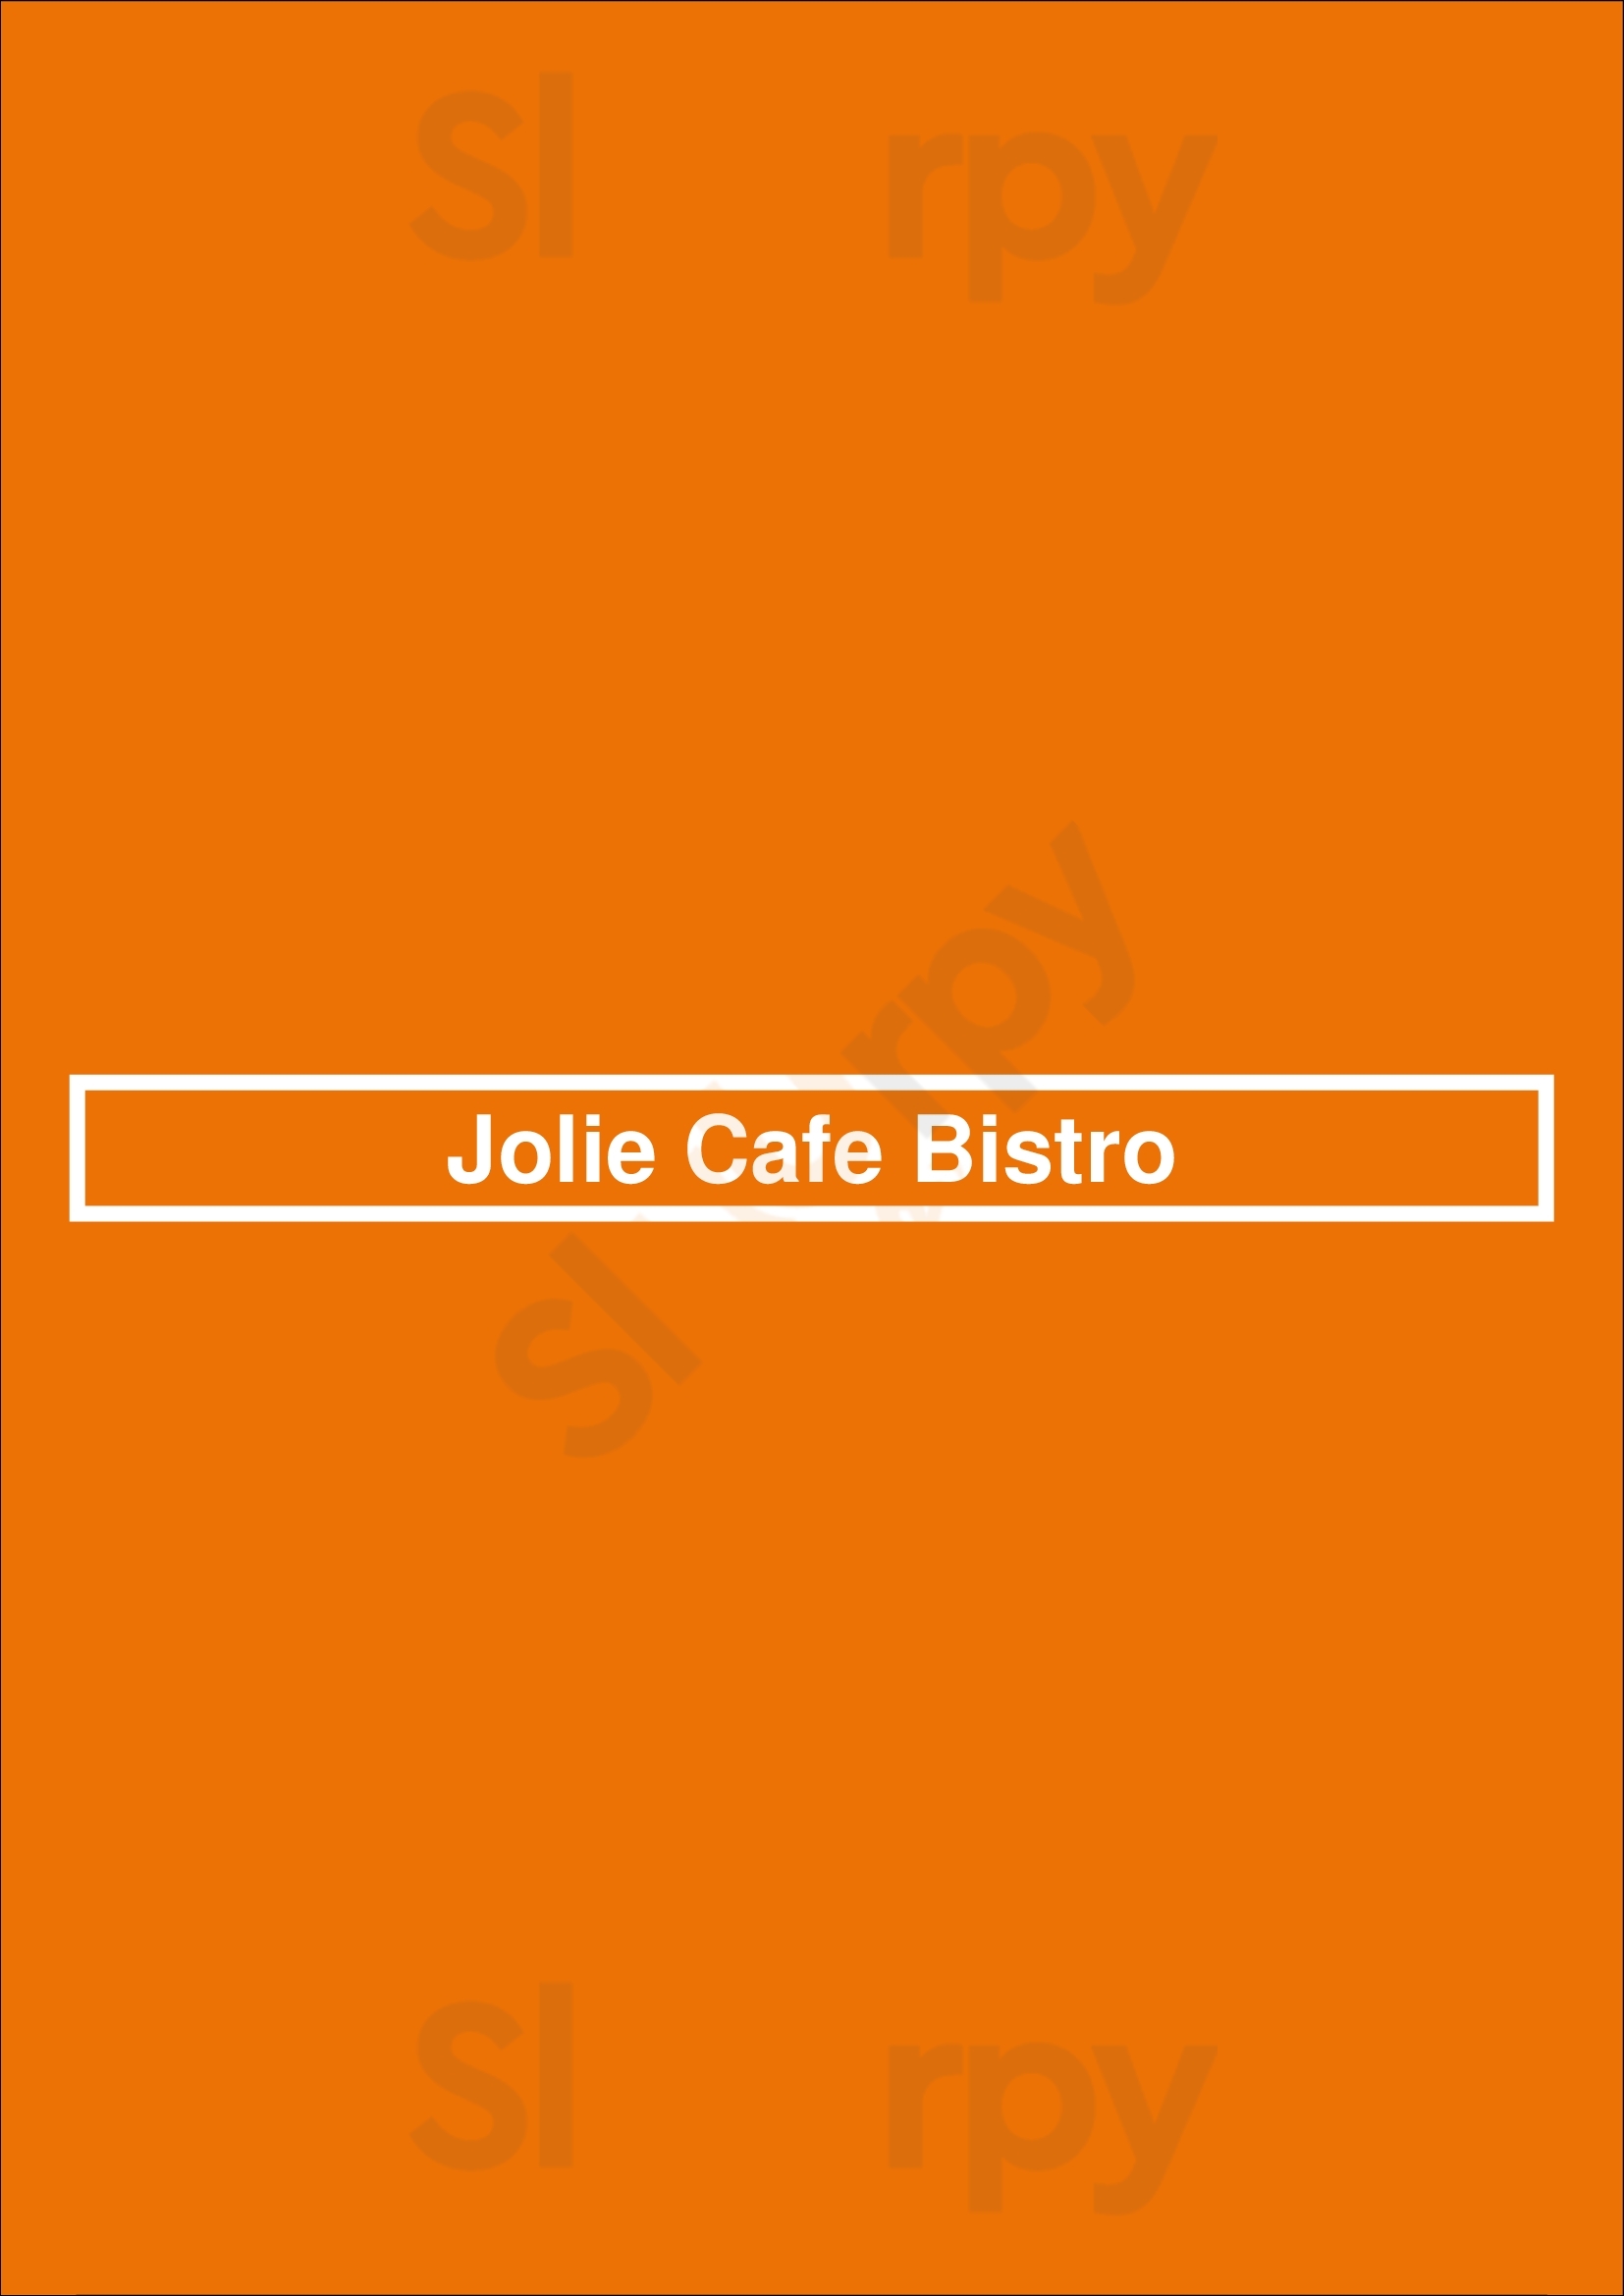 Jolie Cafe Bistro Buenos Aires Menu - 1